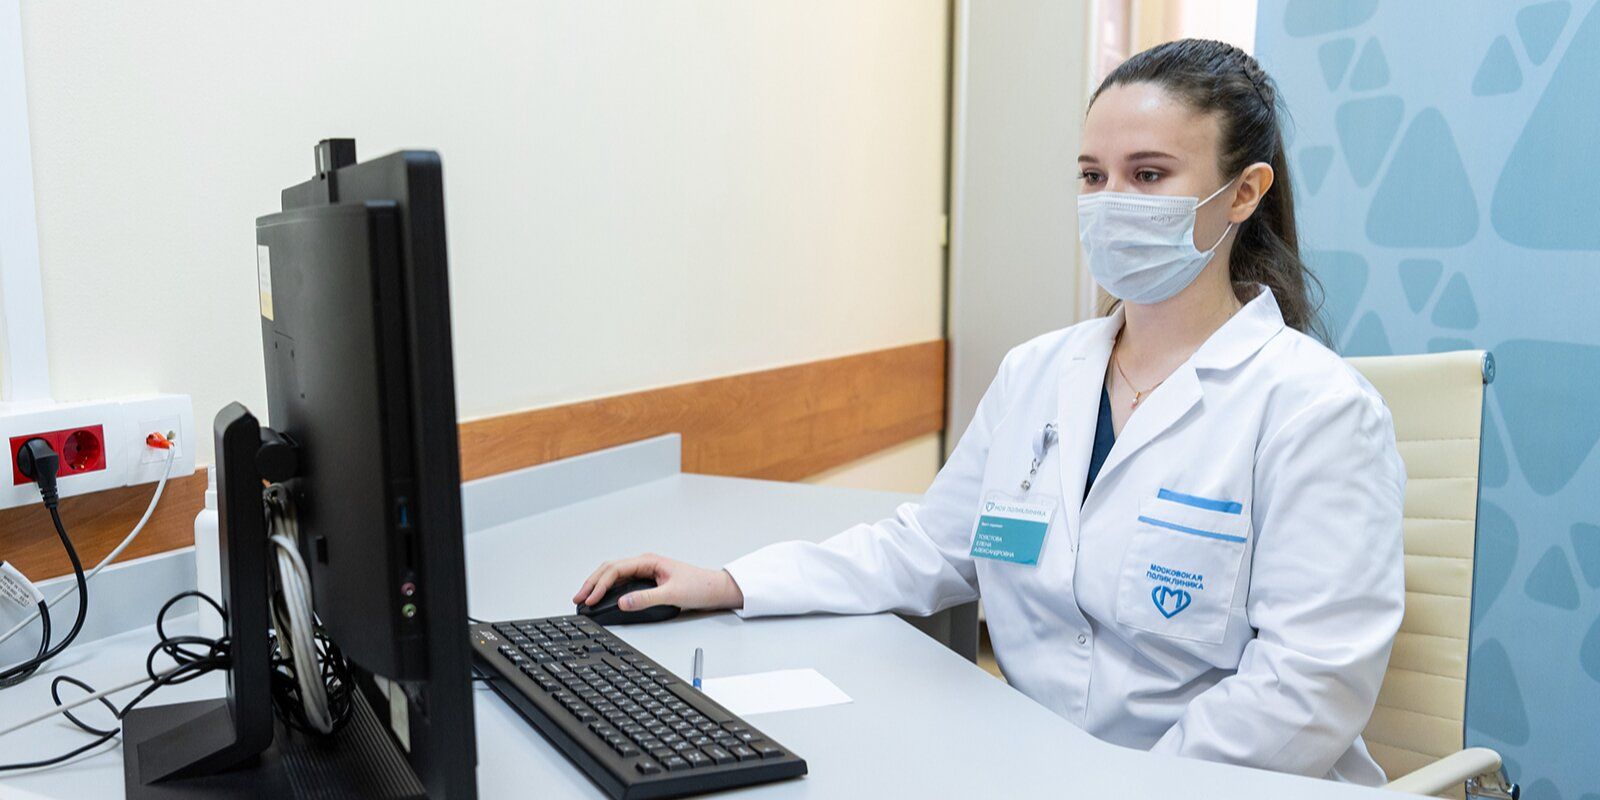 Информация о лечении доступна онлайн для пациентов московских больниц, фото